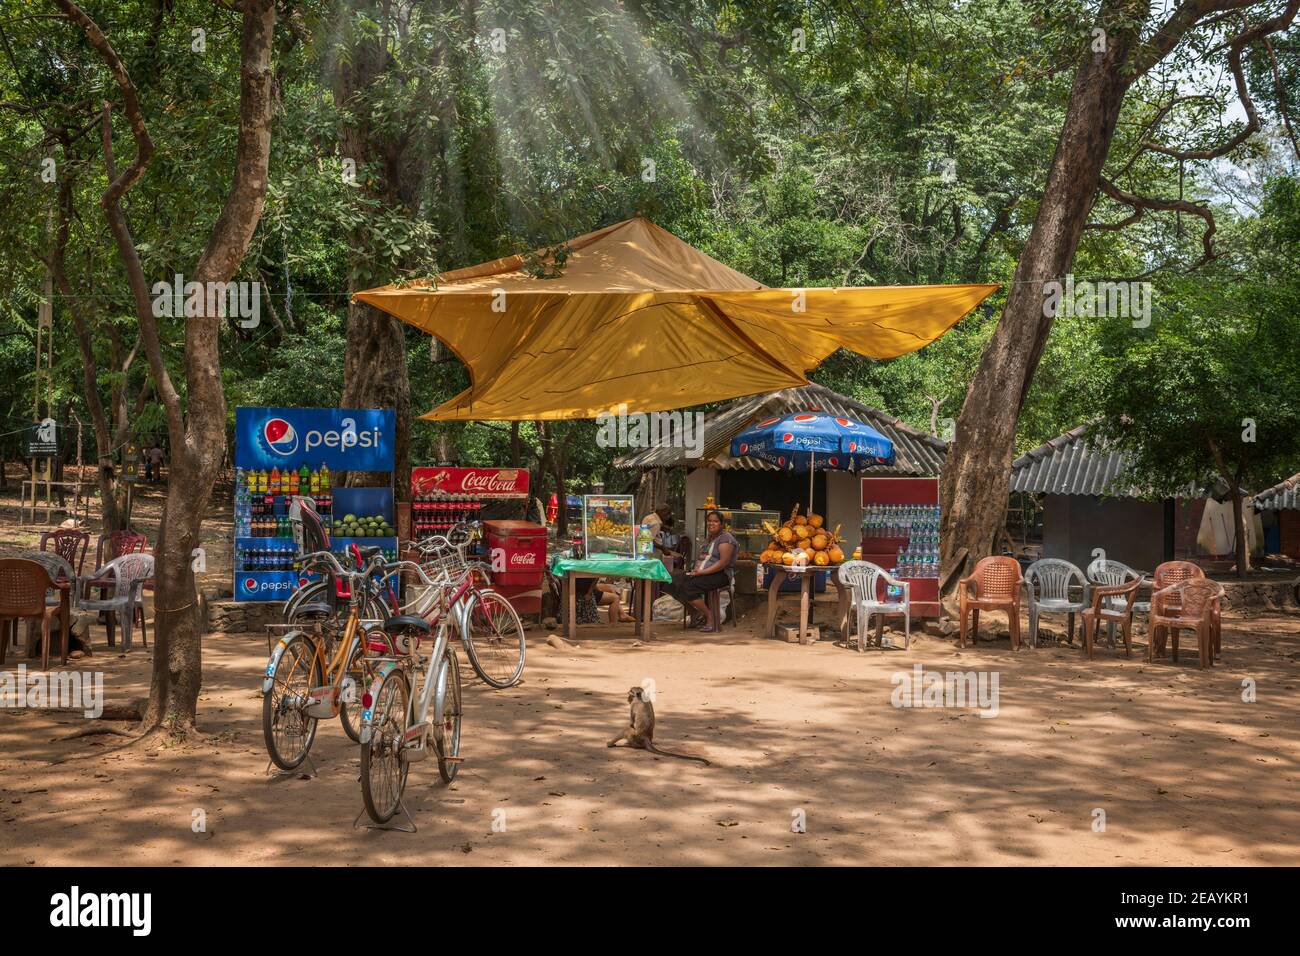 Al riparo sotto una tenda dal sole di mezzogiorno, una piccola azienda a conduzione familiare offre rinfreschi ai turisti che passano nell'antica città di Polonnarawu Foto Stock